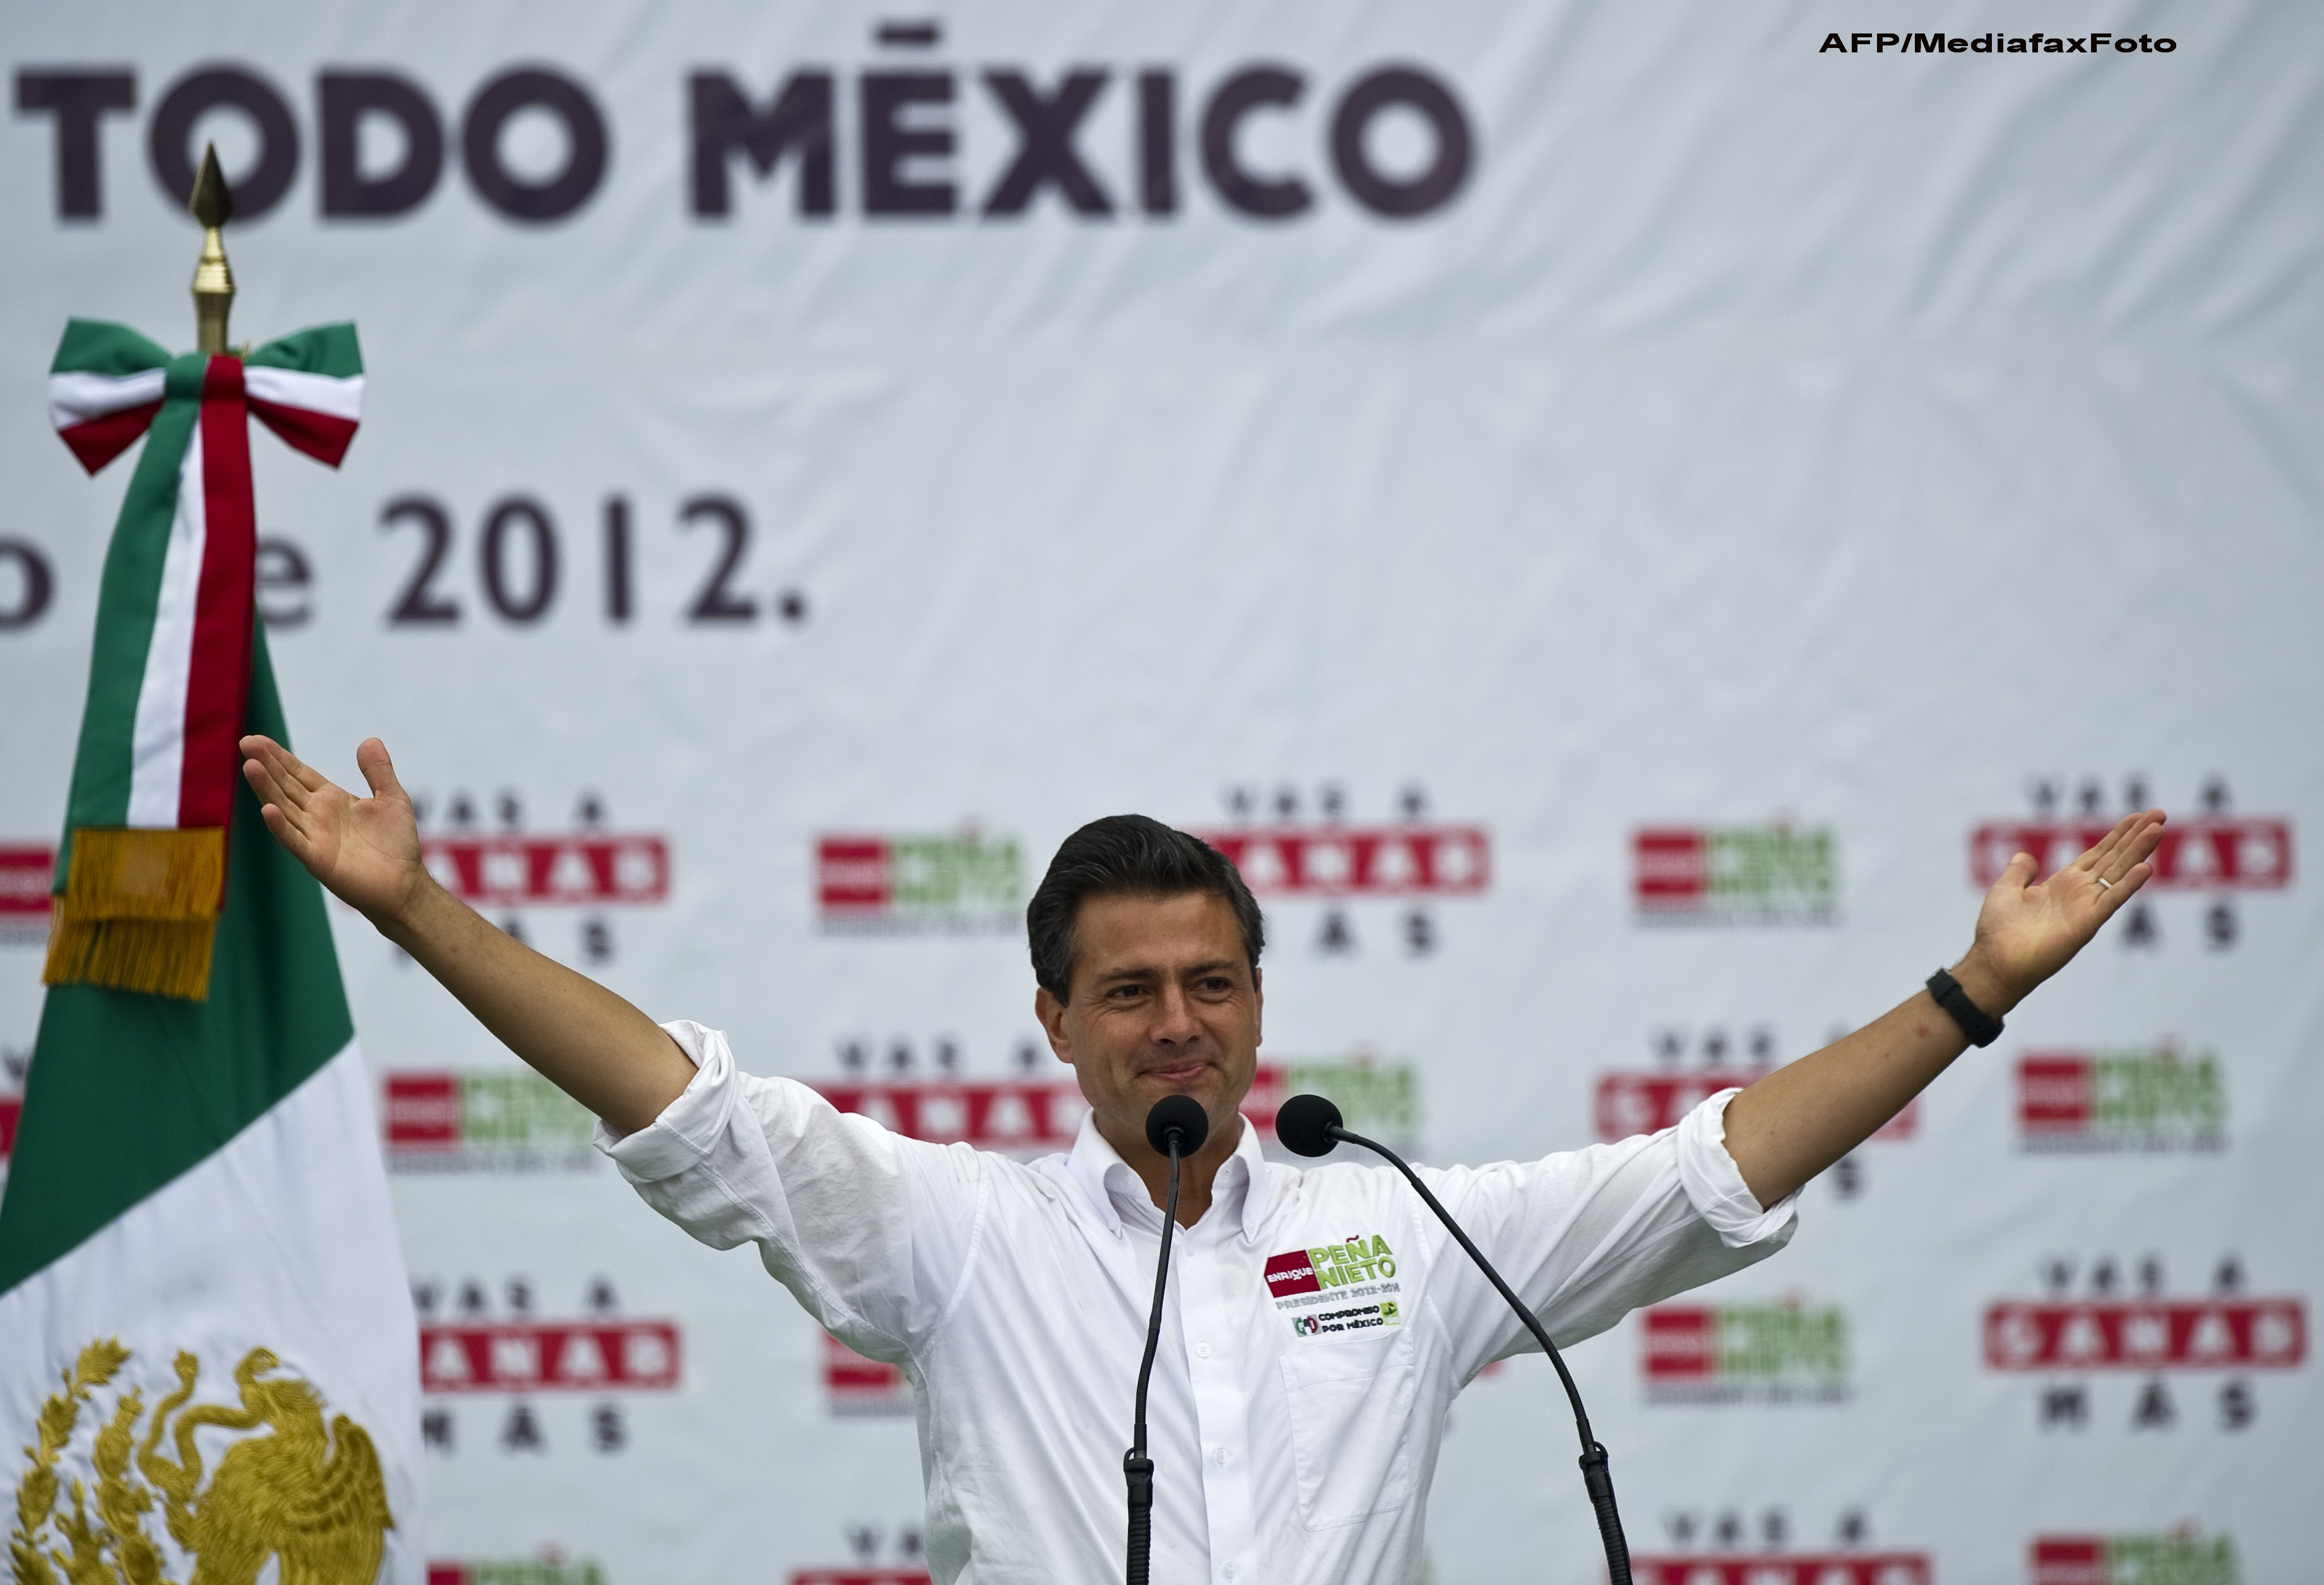 Enrique Pena Nieto este noul presedinte al Mexicului. Partidul sau, criticat pentru coruptie